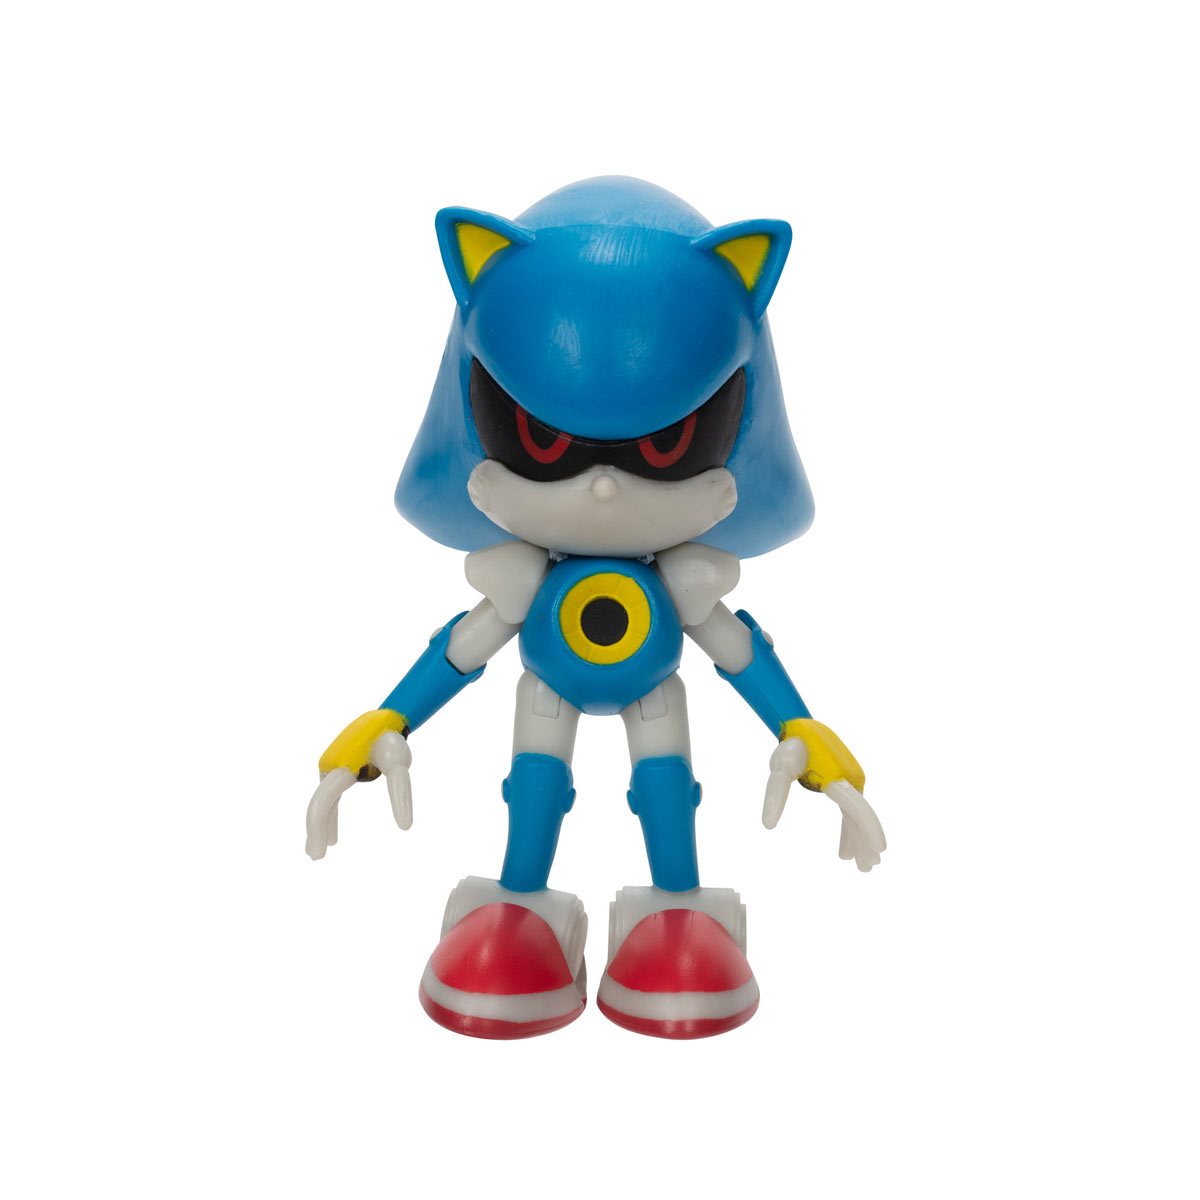 Mini Boneco Articulado Sonic The Hedgehog Amy 6 Cm